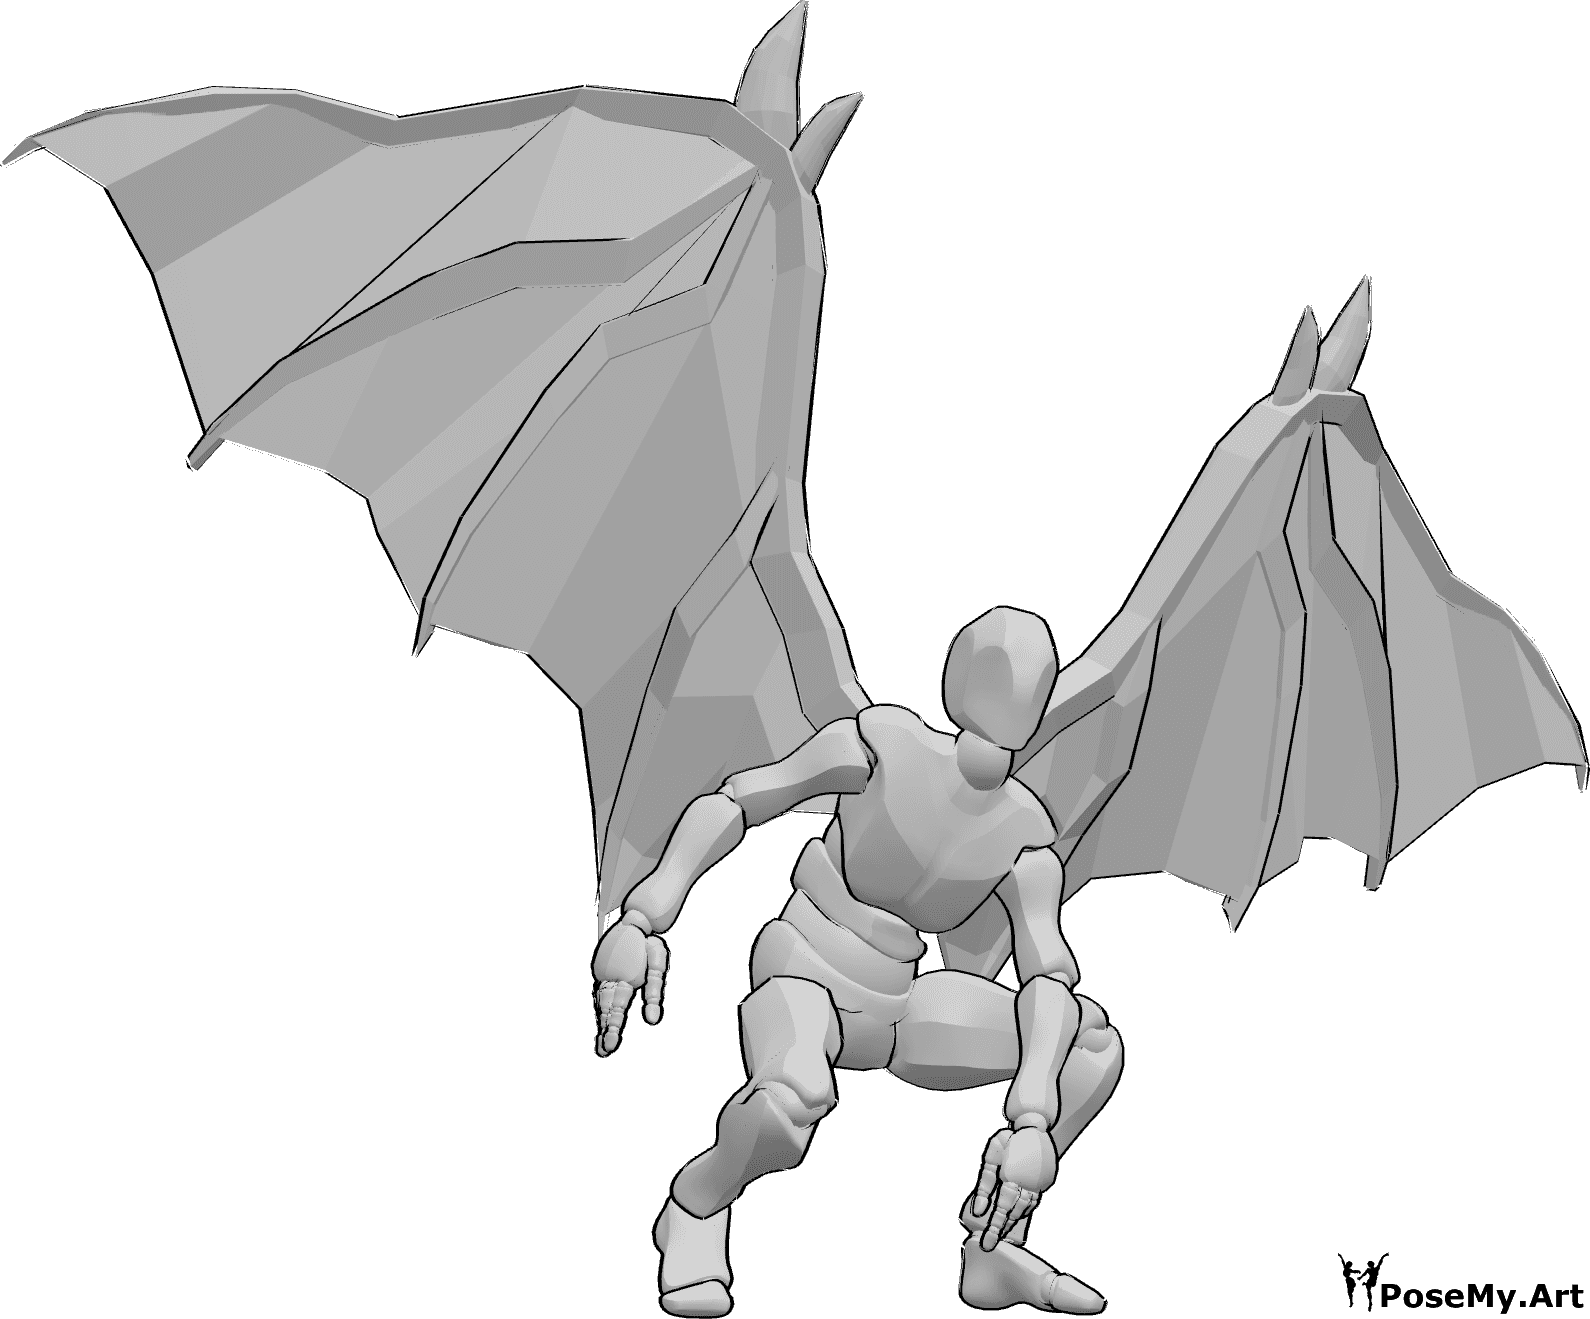 Référence des poses- Pose d'atterrissage des ailes du diable - Homme avec des ailes de diable atterrissant, regardant vers l'avant et se tenant en équilibre avec ses mains.